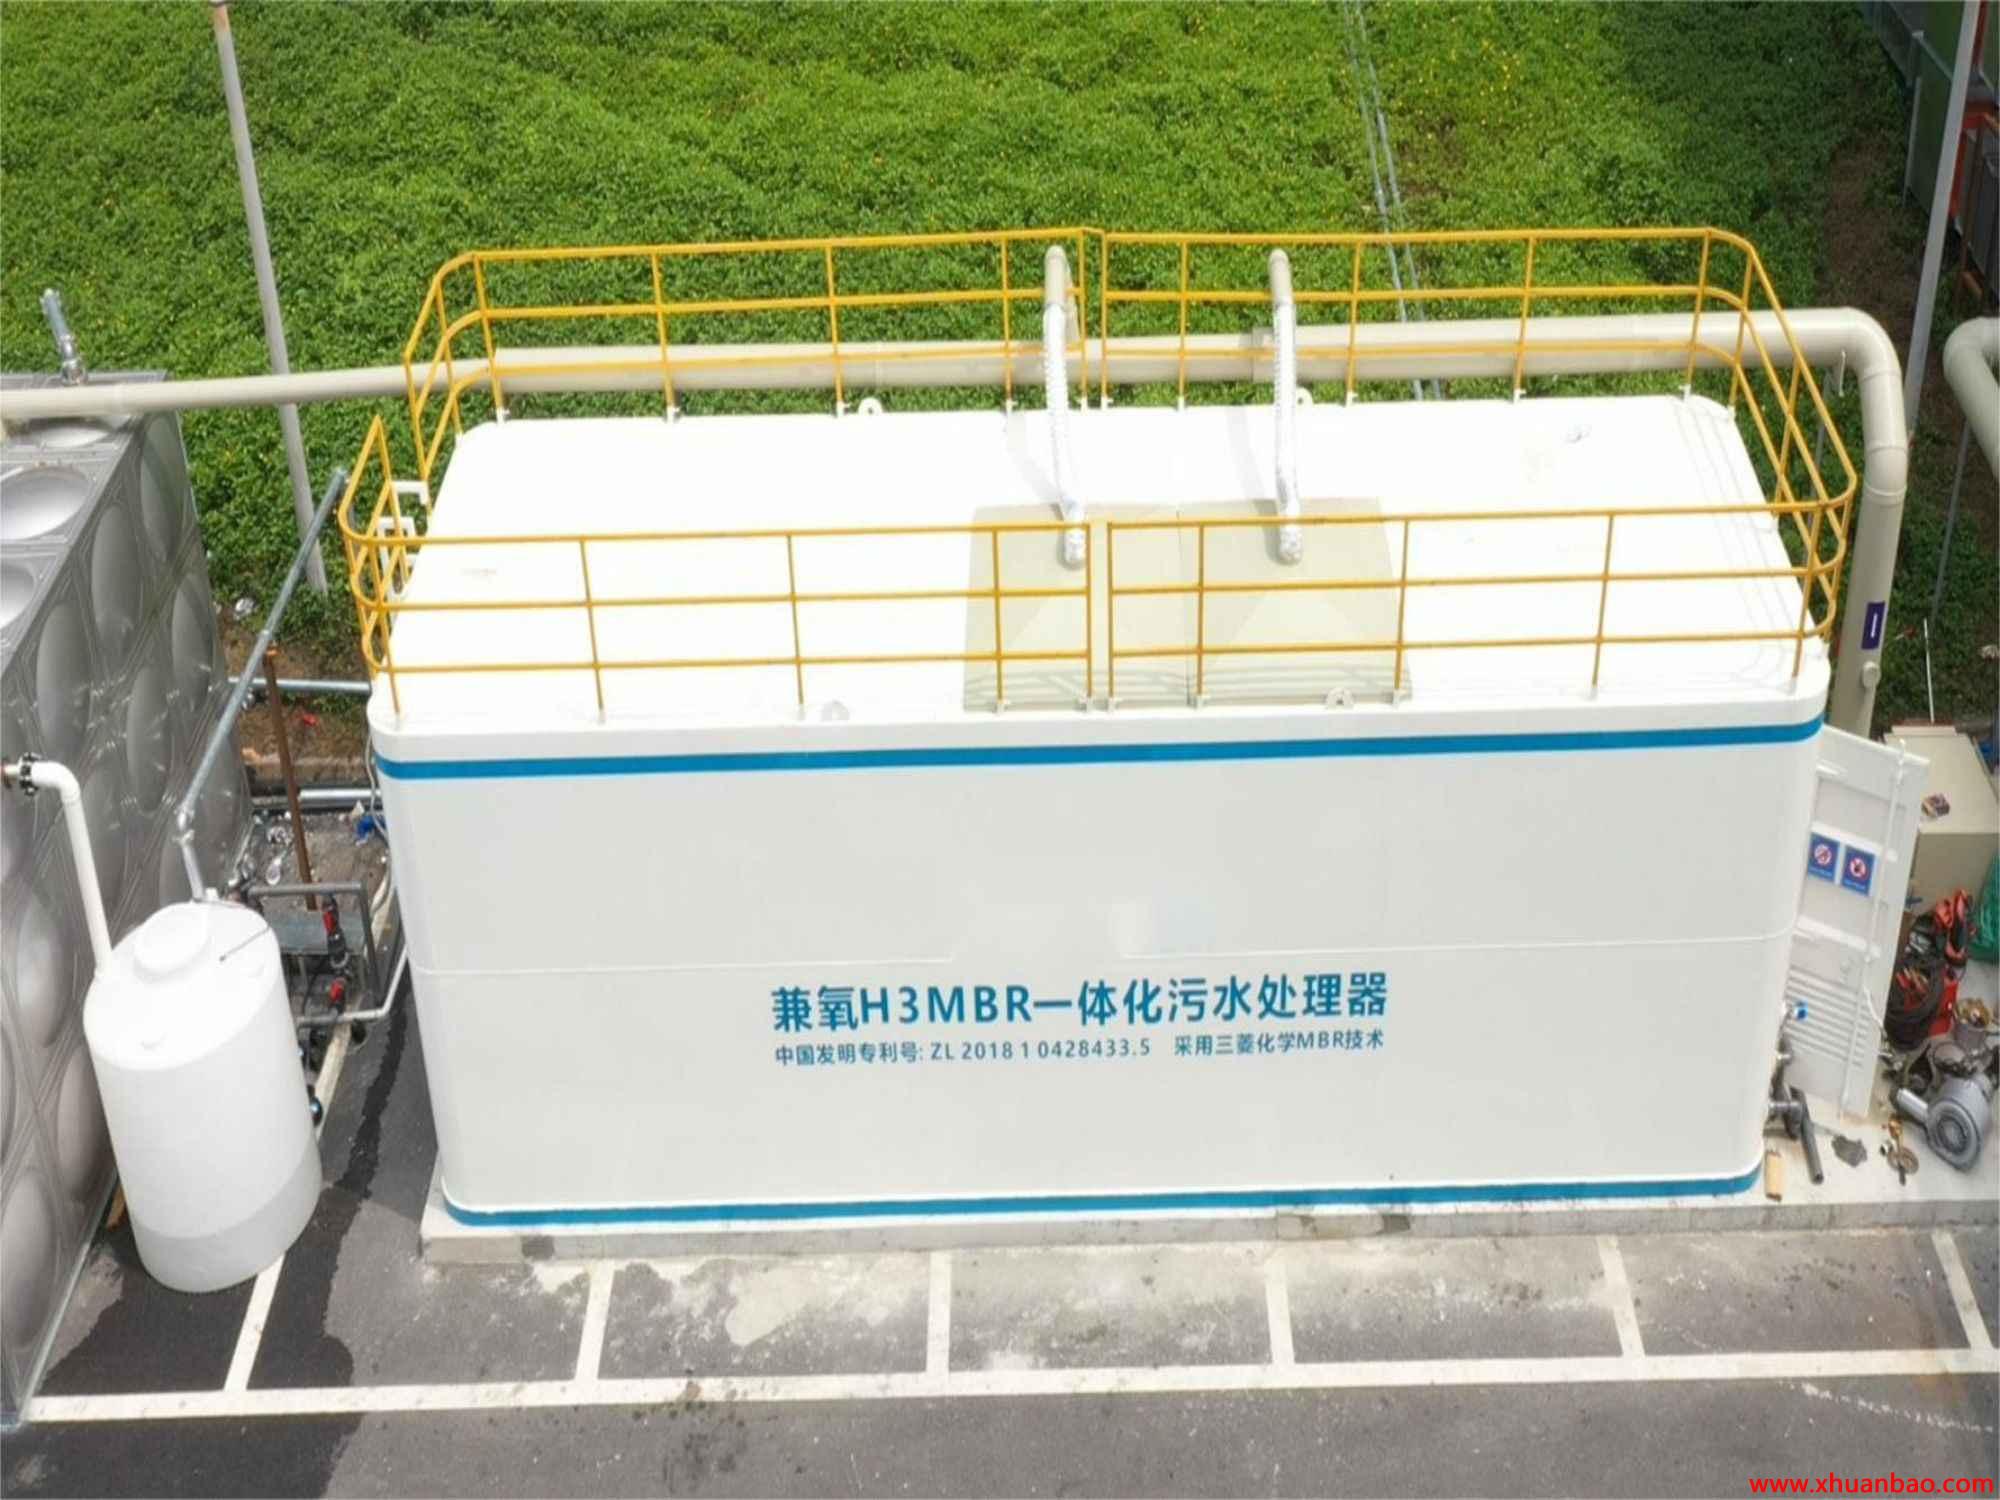 云南省大理州方舱医院污水处理一体化设备 A/O+MBR工艺 运行稳定